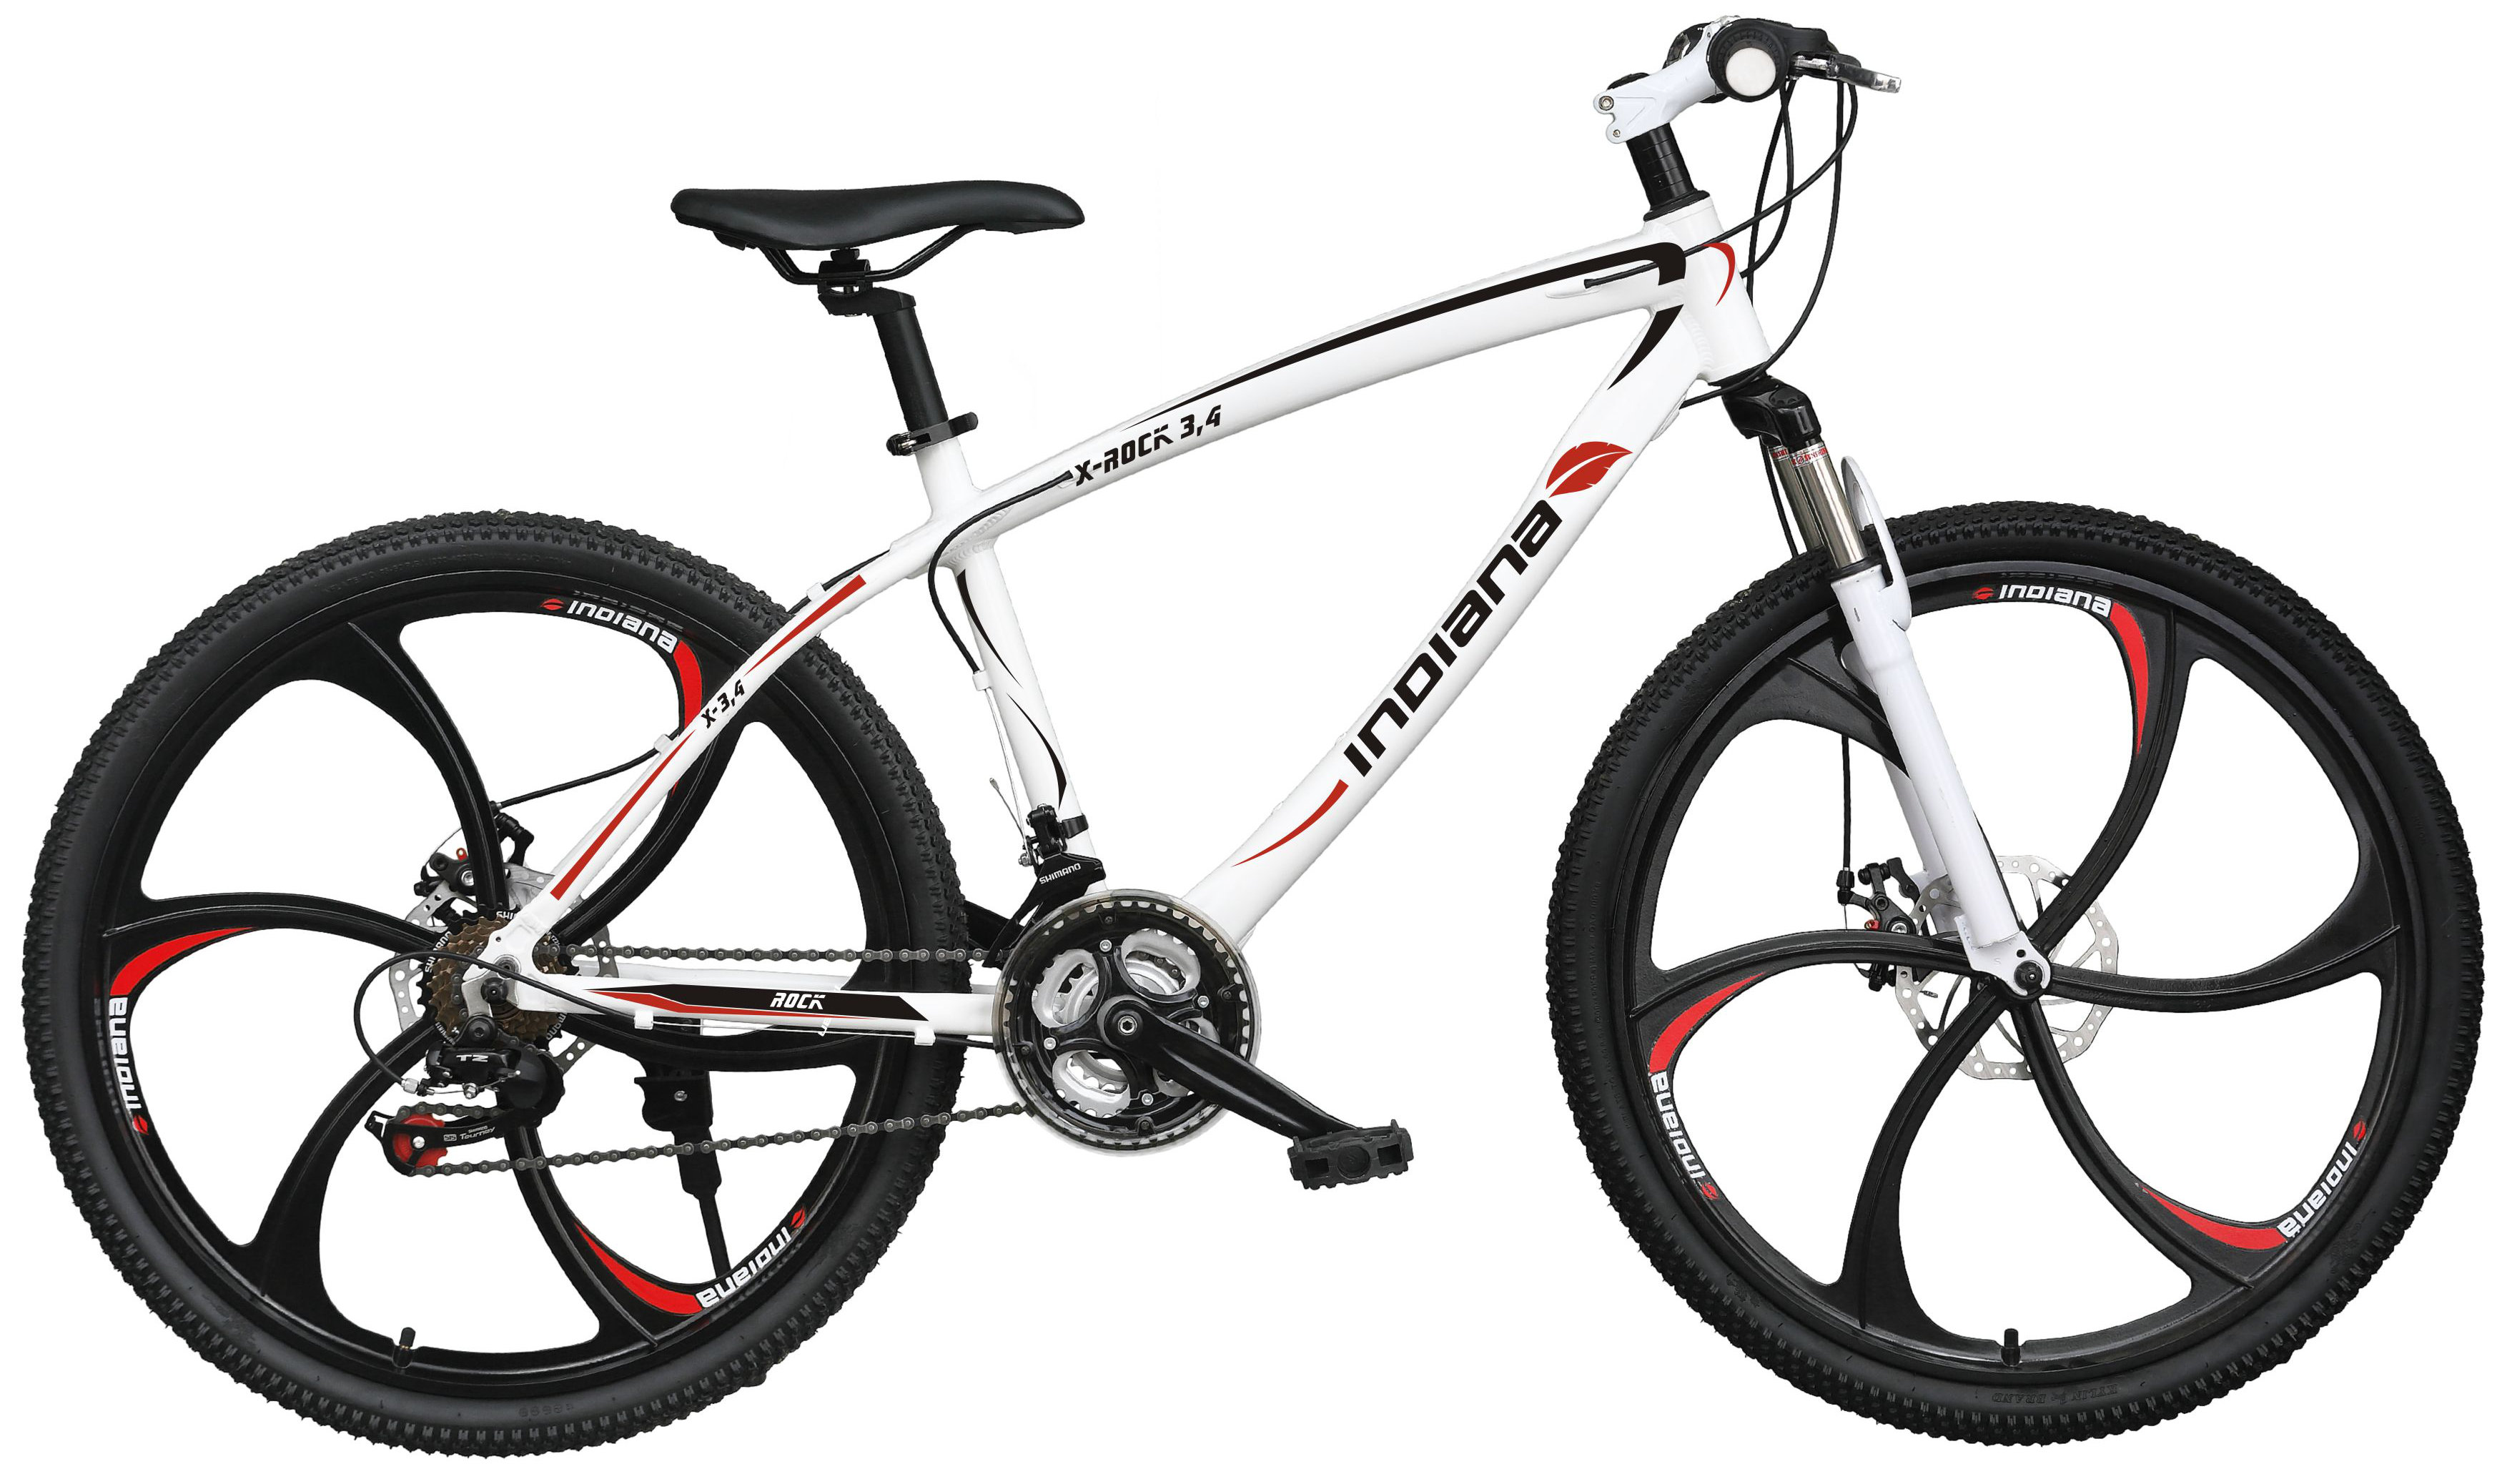 INDIANA X-Rock 3.4 Biały Rower - niskie ceny i opinie w Media Expert